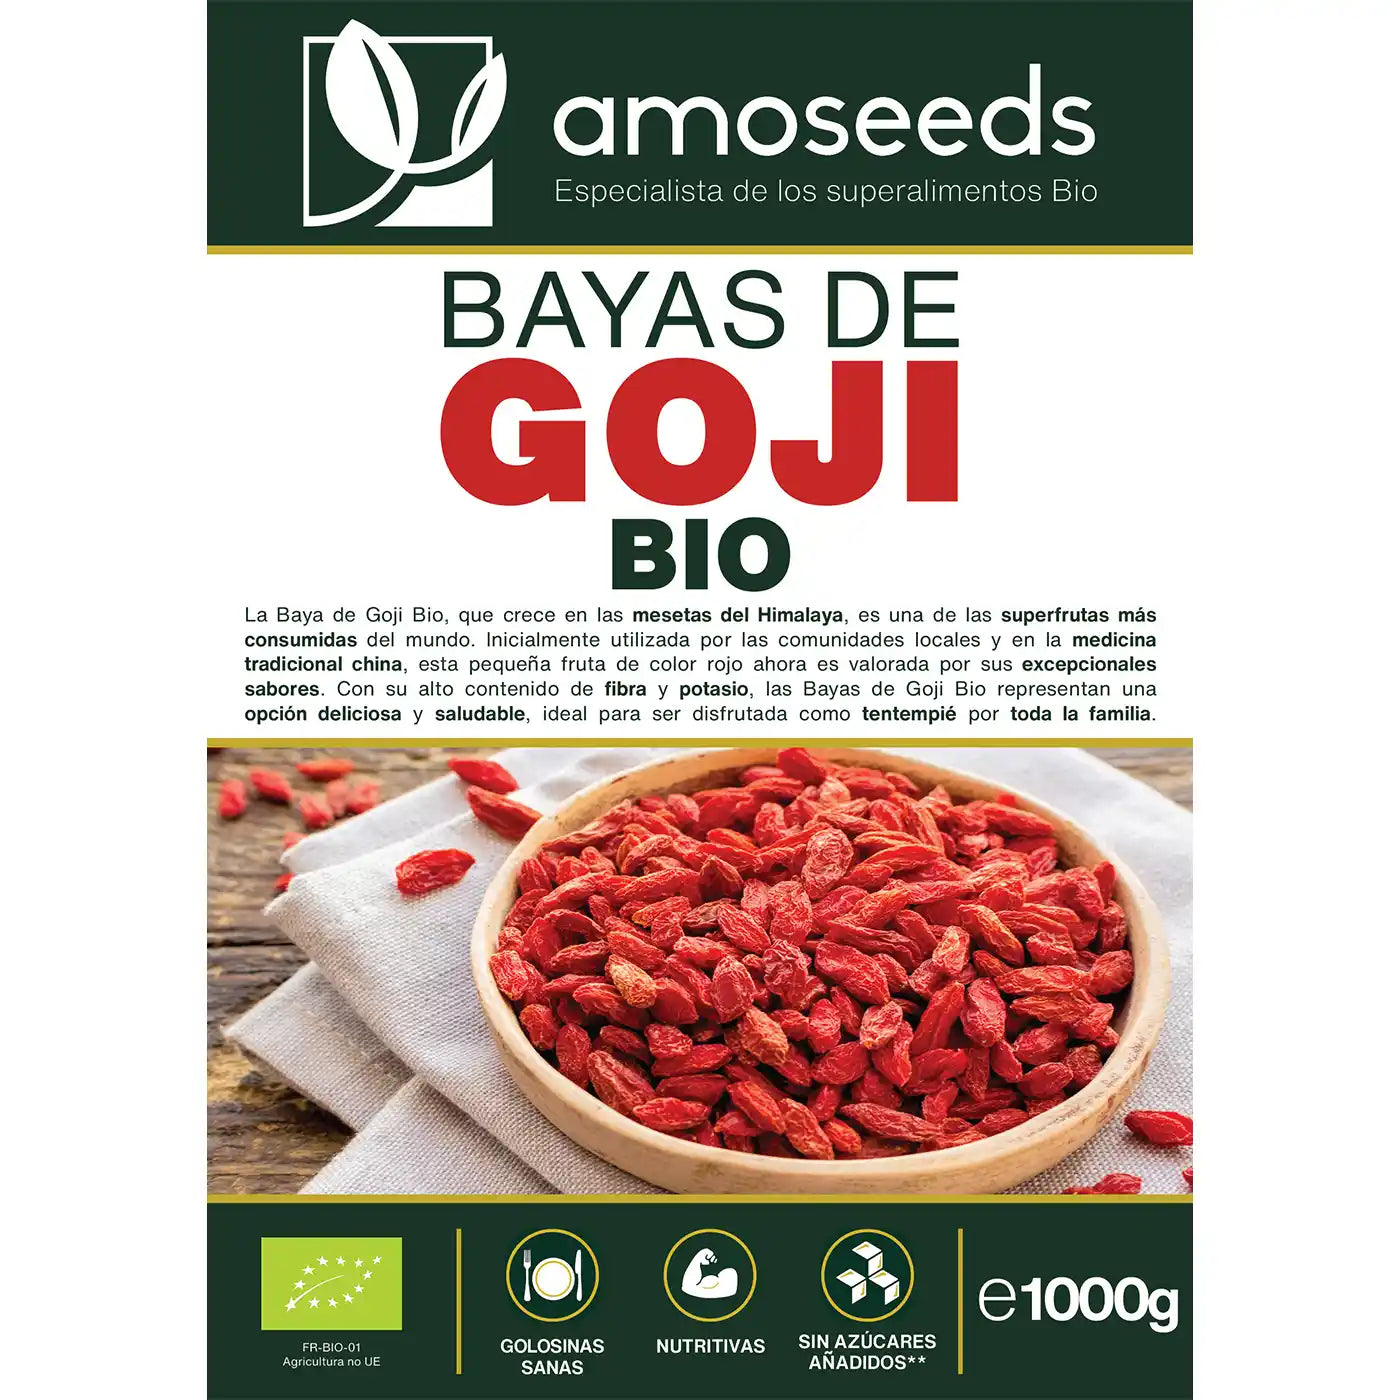 Bayas de goji Bio amoseeds especialista de los superalimentos Bio